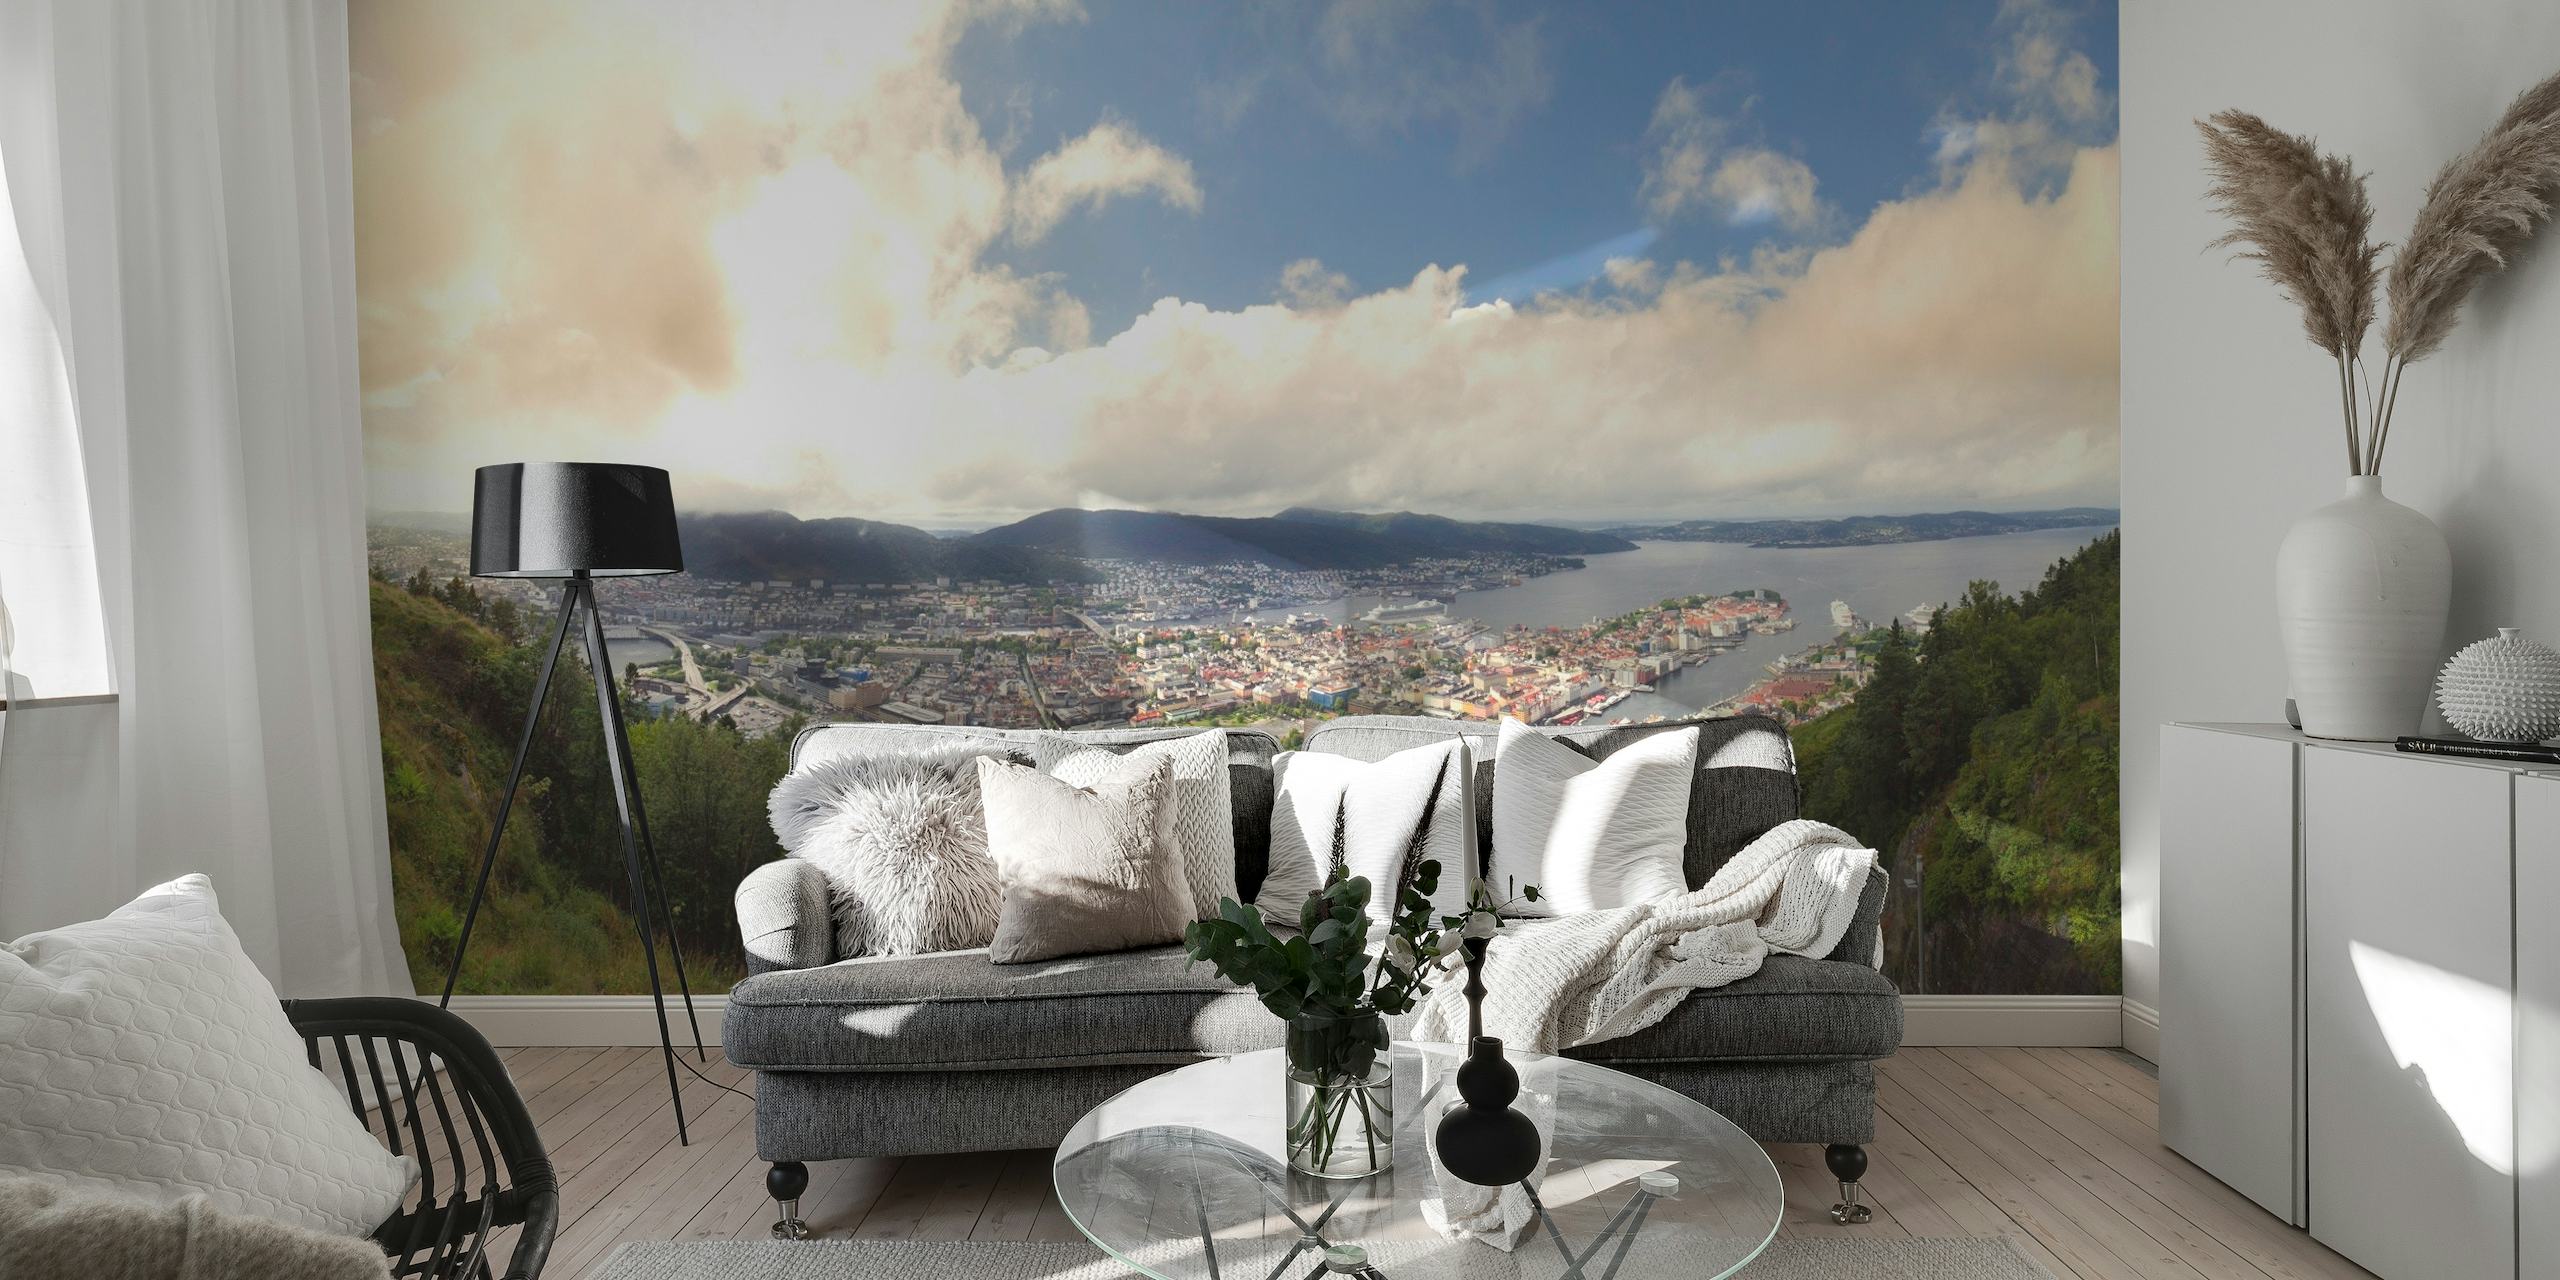 Vægmaleri med panoramaudsigt af Bergen by omgivet af bjerge og grønne områder